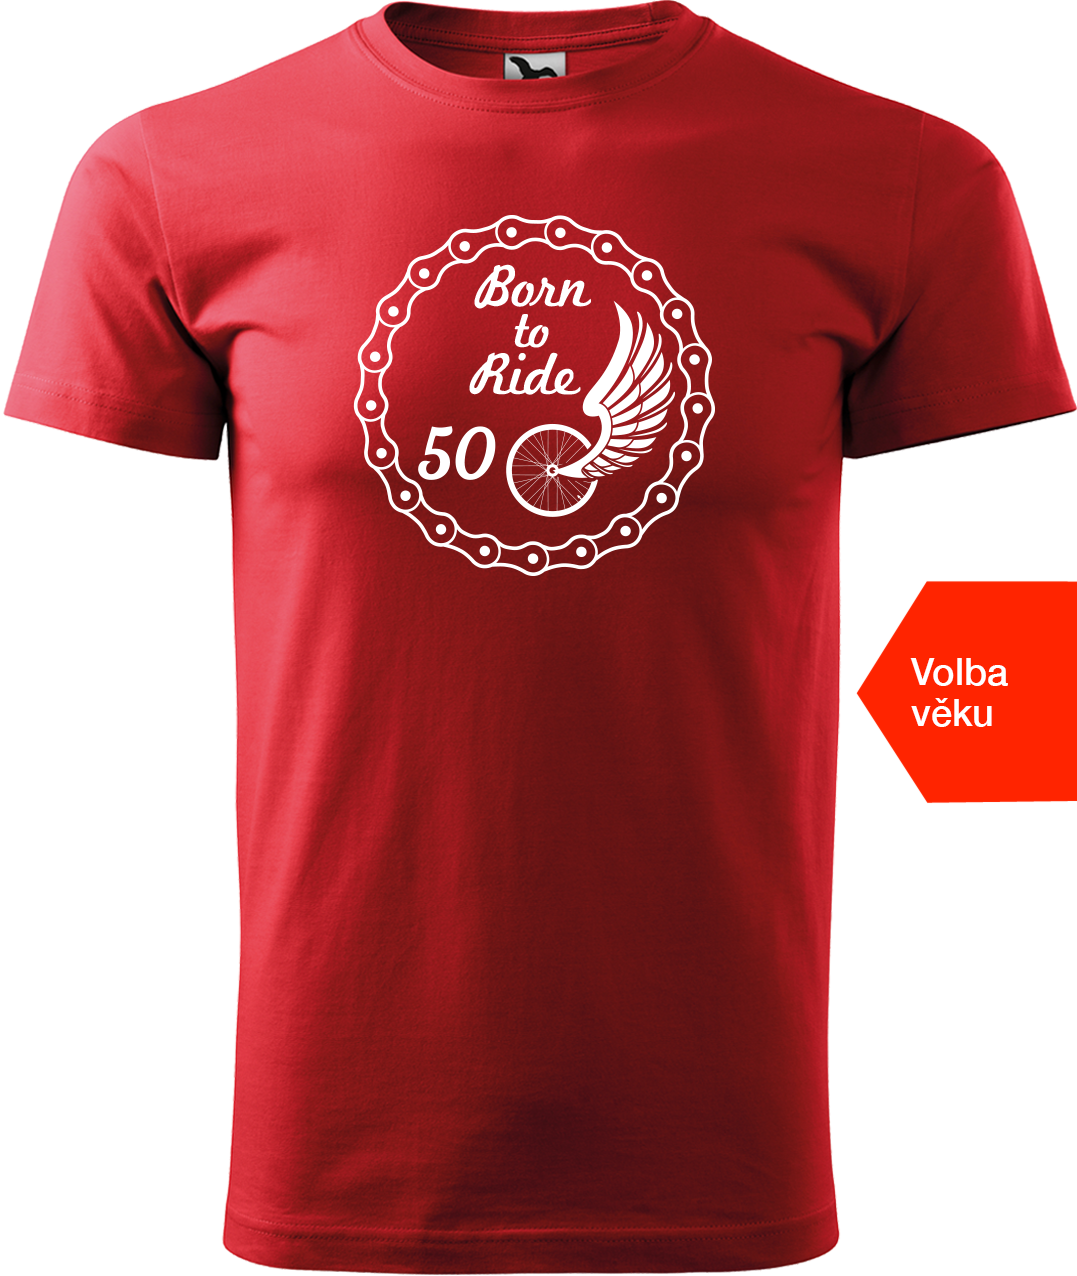 Pánské tričko pro cyklistu s věkem - Born to Ride (wings) Velikost: XL, Barva: Červená (07)